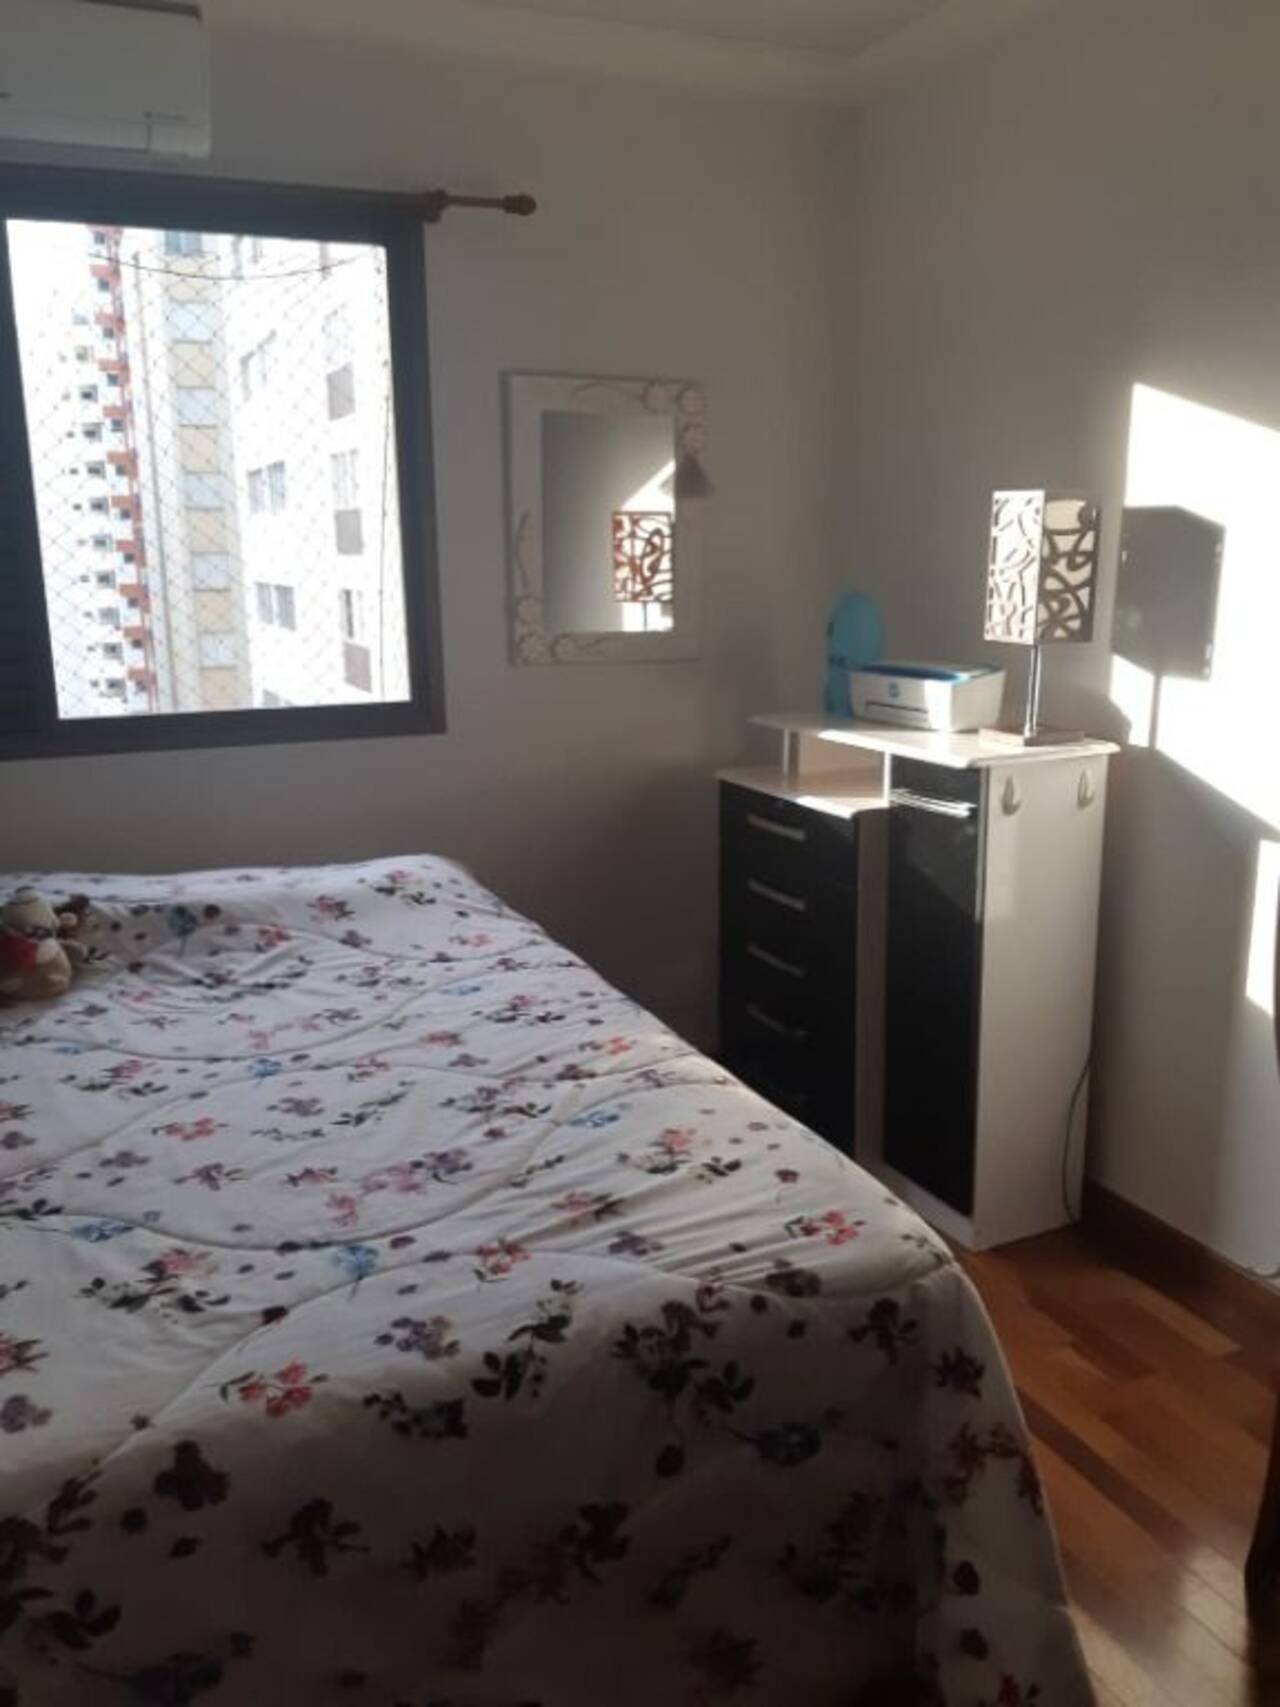 Apartamento Vila Adyana, São José dos Campos - SP